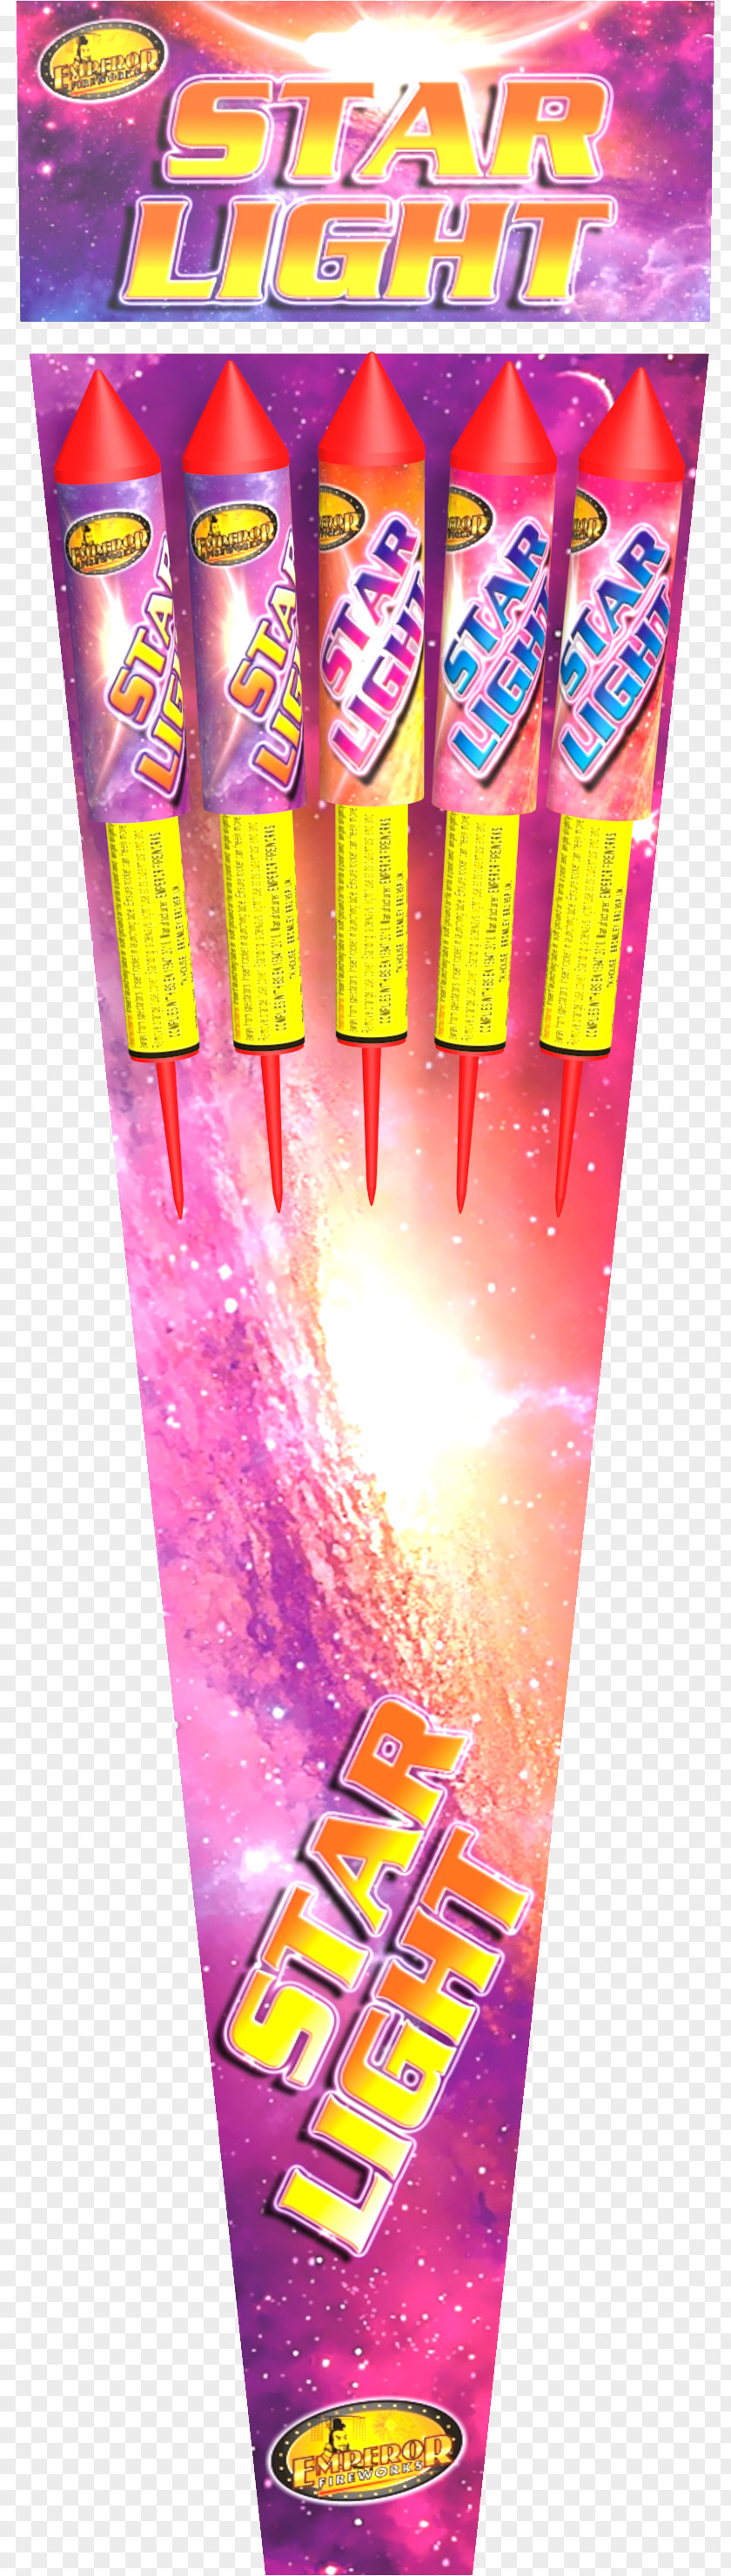 Rocket Fireworks Roman Candle Sparkler London PNG